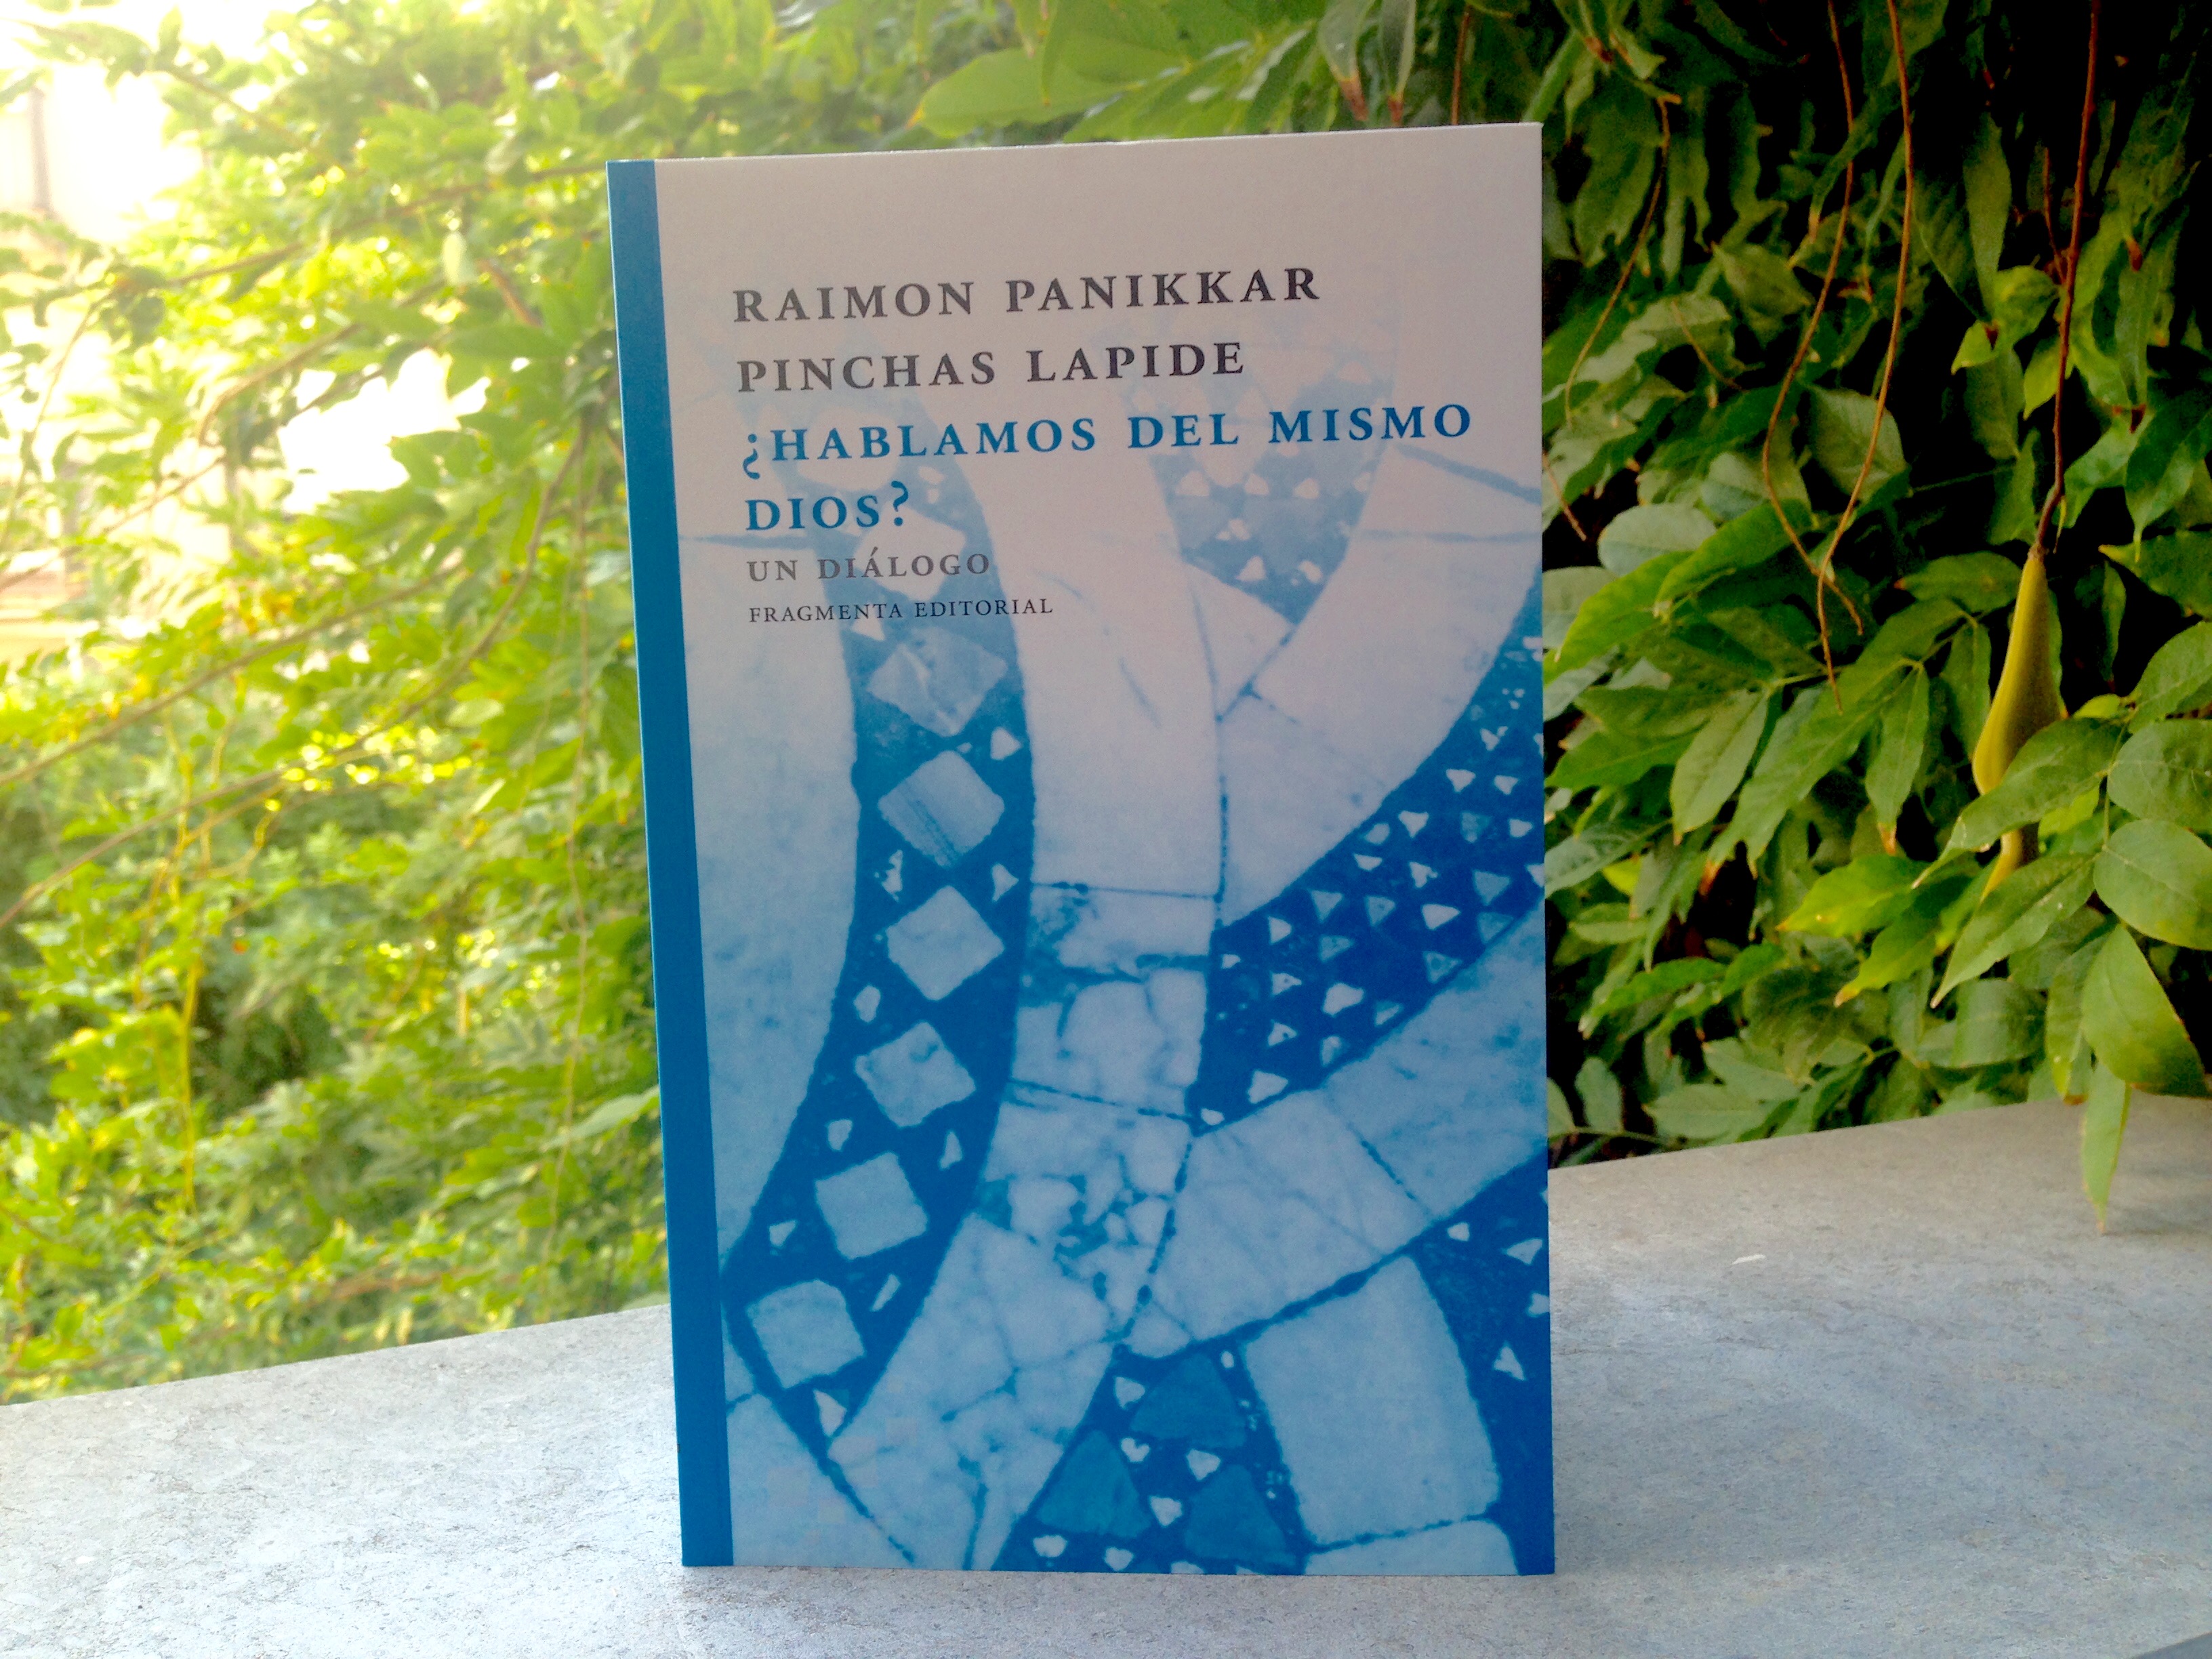 Fragmenta publica una conversación entre el filósofo Raimon Panikkar y el rabino Pinchas Lapide